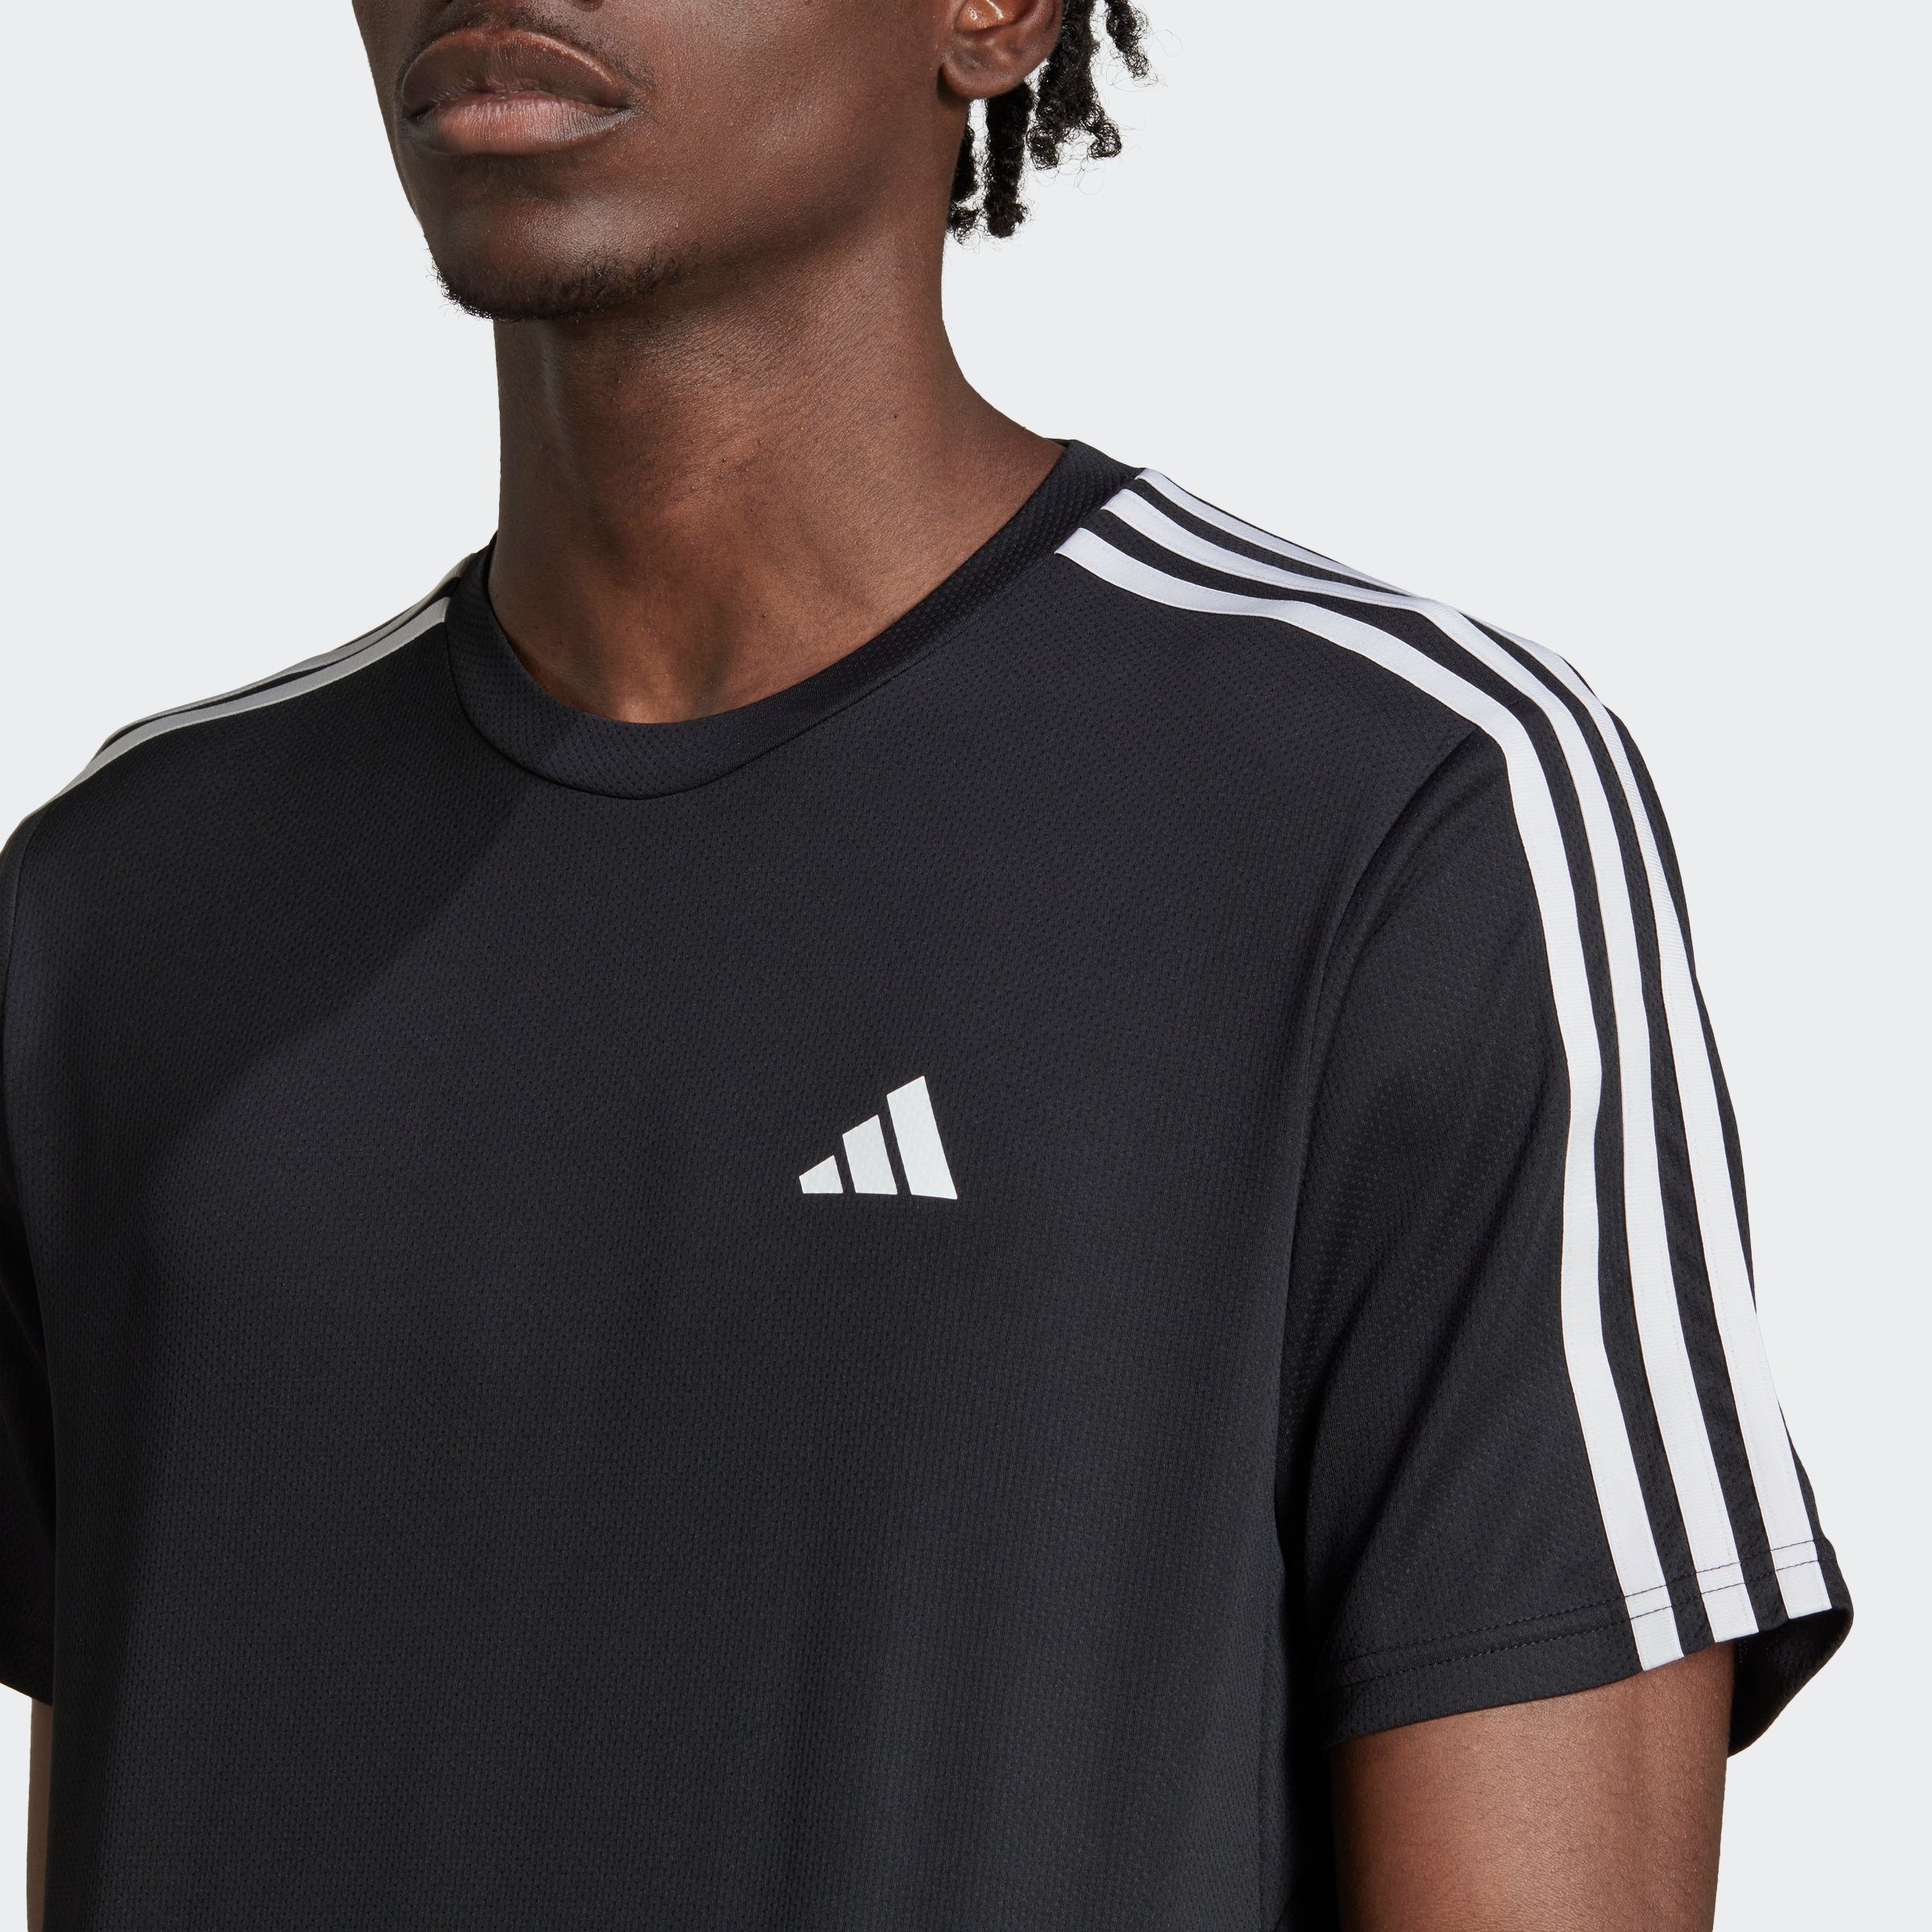 adidas Performance T-Shirt TR-ES BASE / Black White 3S T